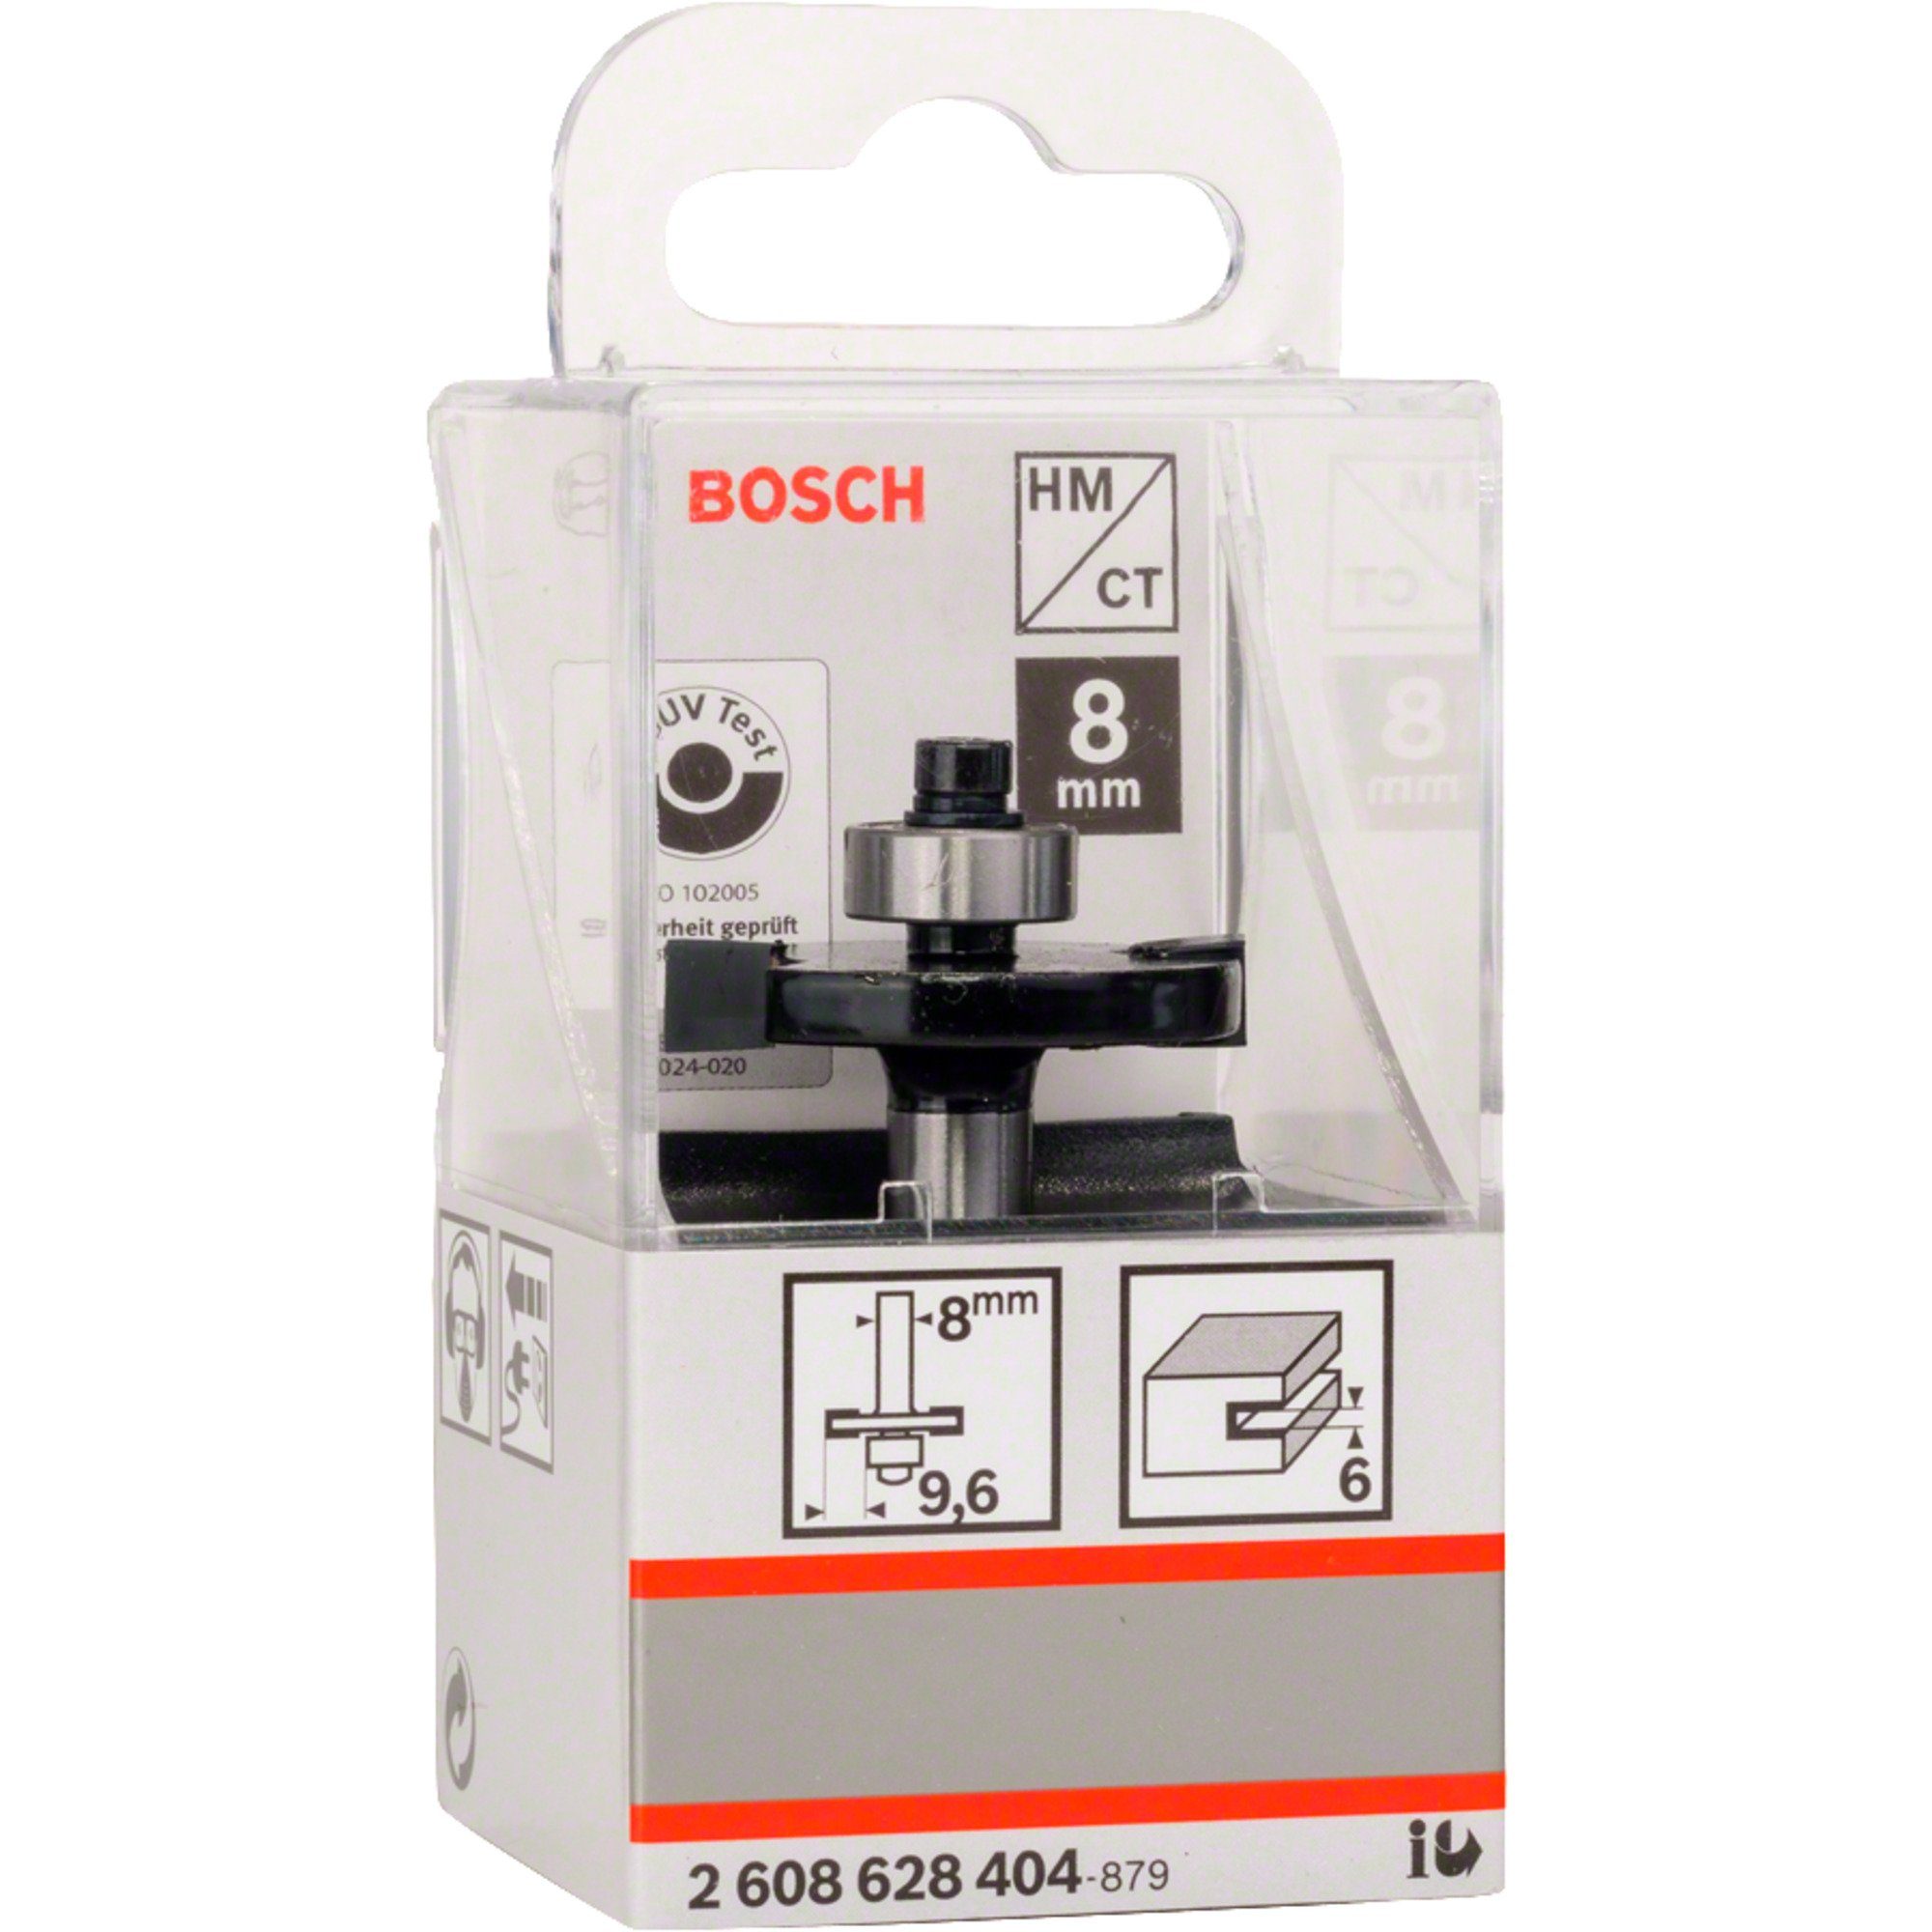 BOSCH Fräse Bosch Professional Scheiben-Nutfräser for Standard